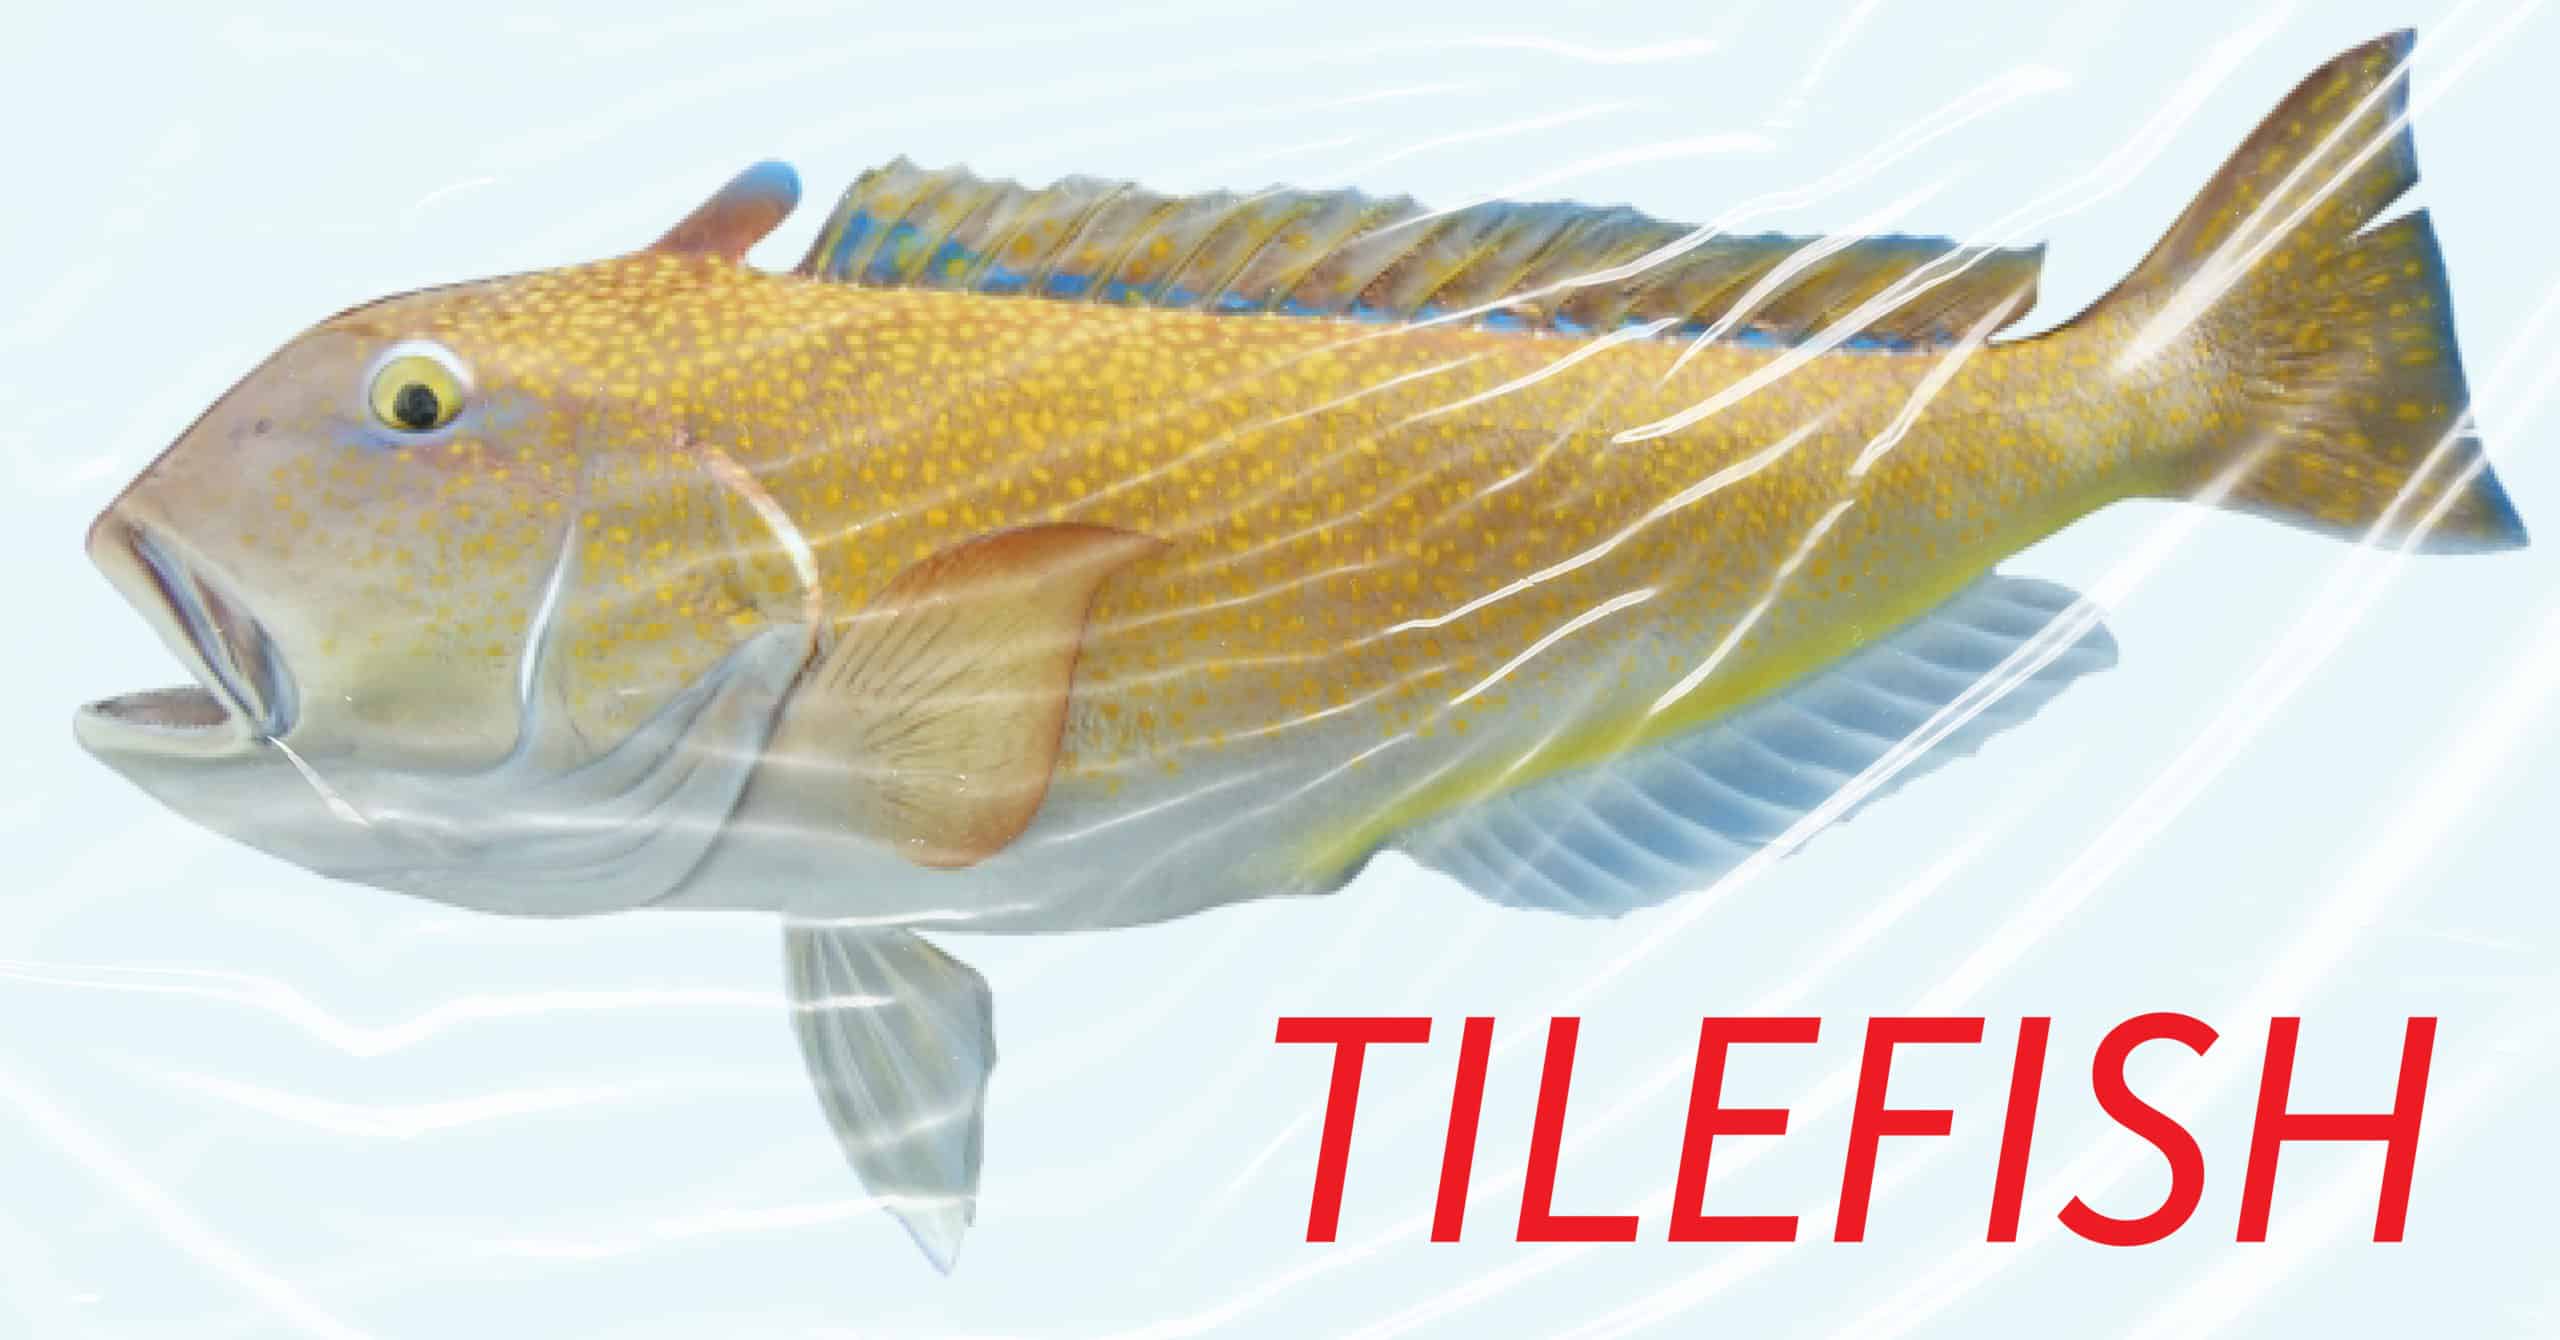 Tilefish